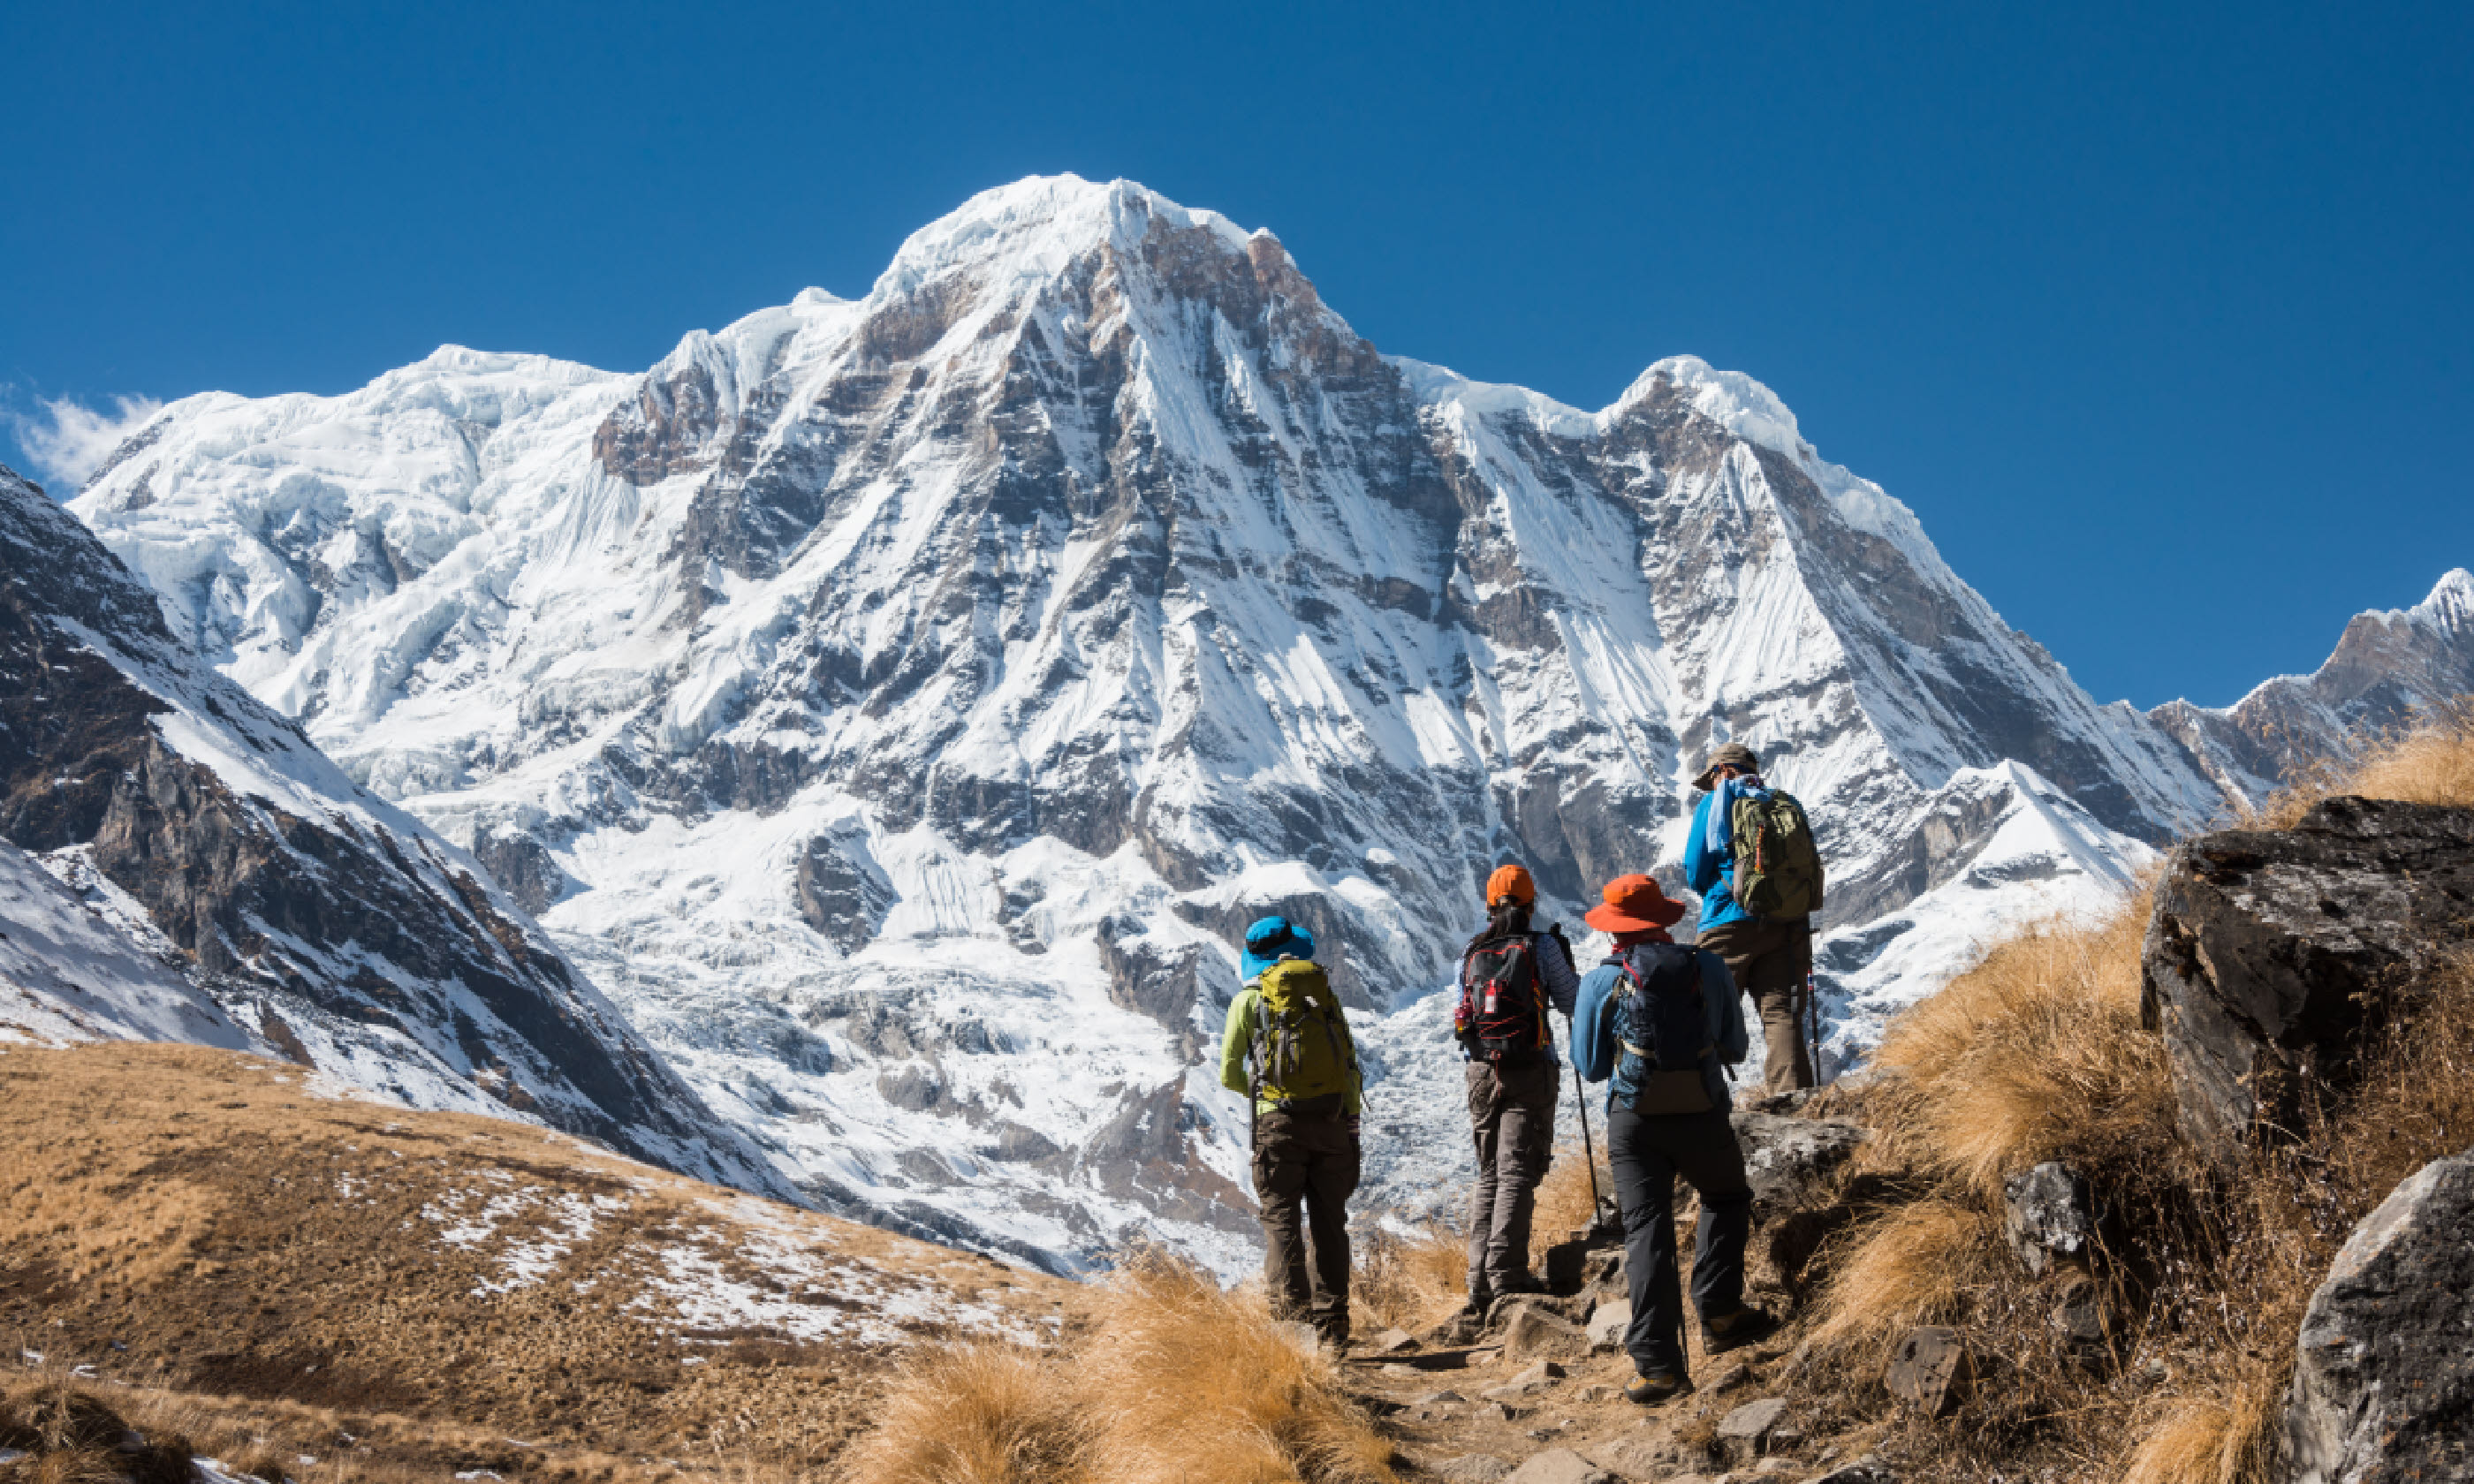 Trekking in Annapurna region (Shutterstock)